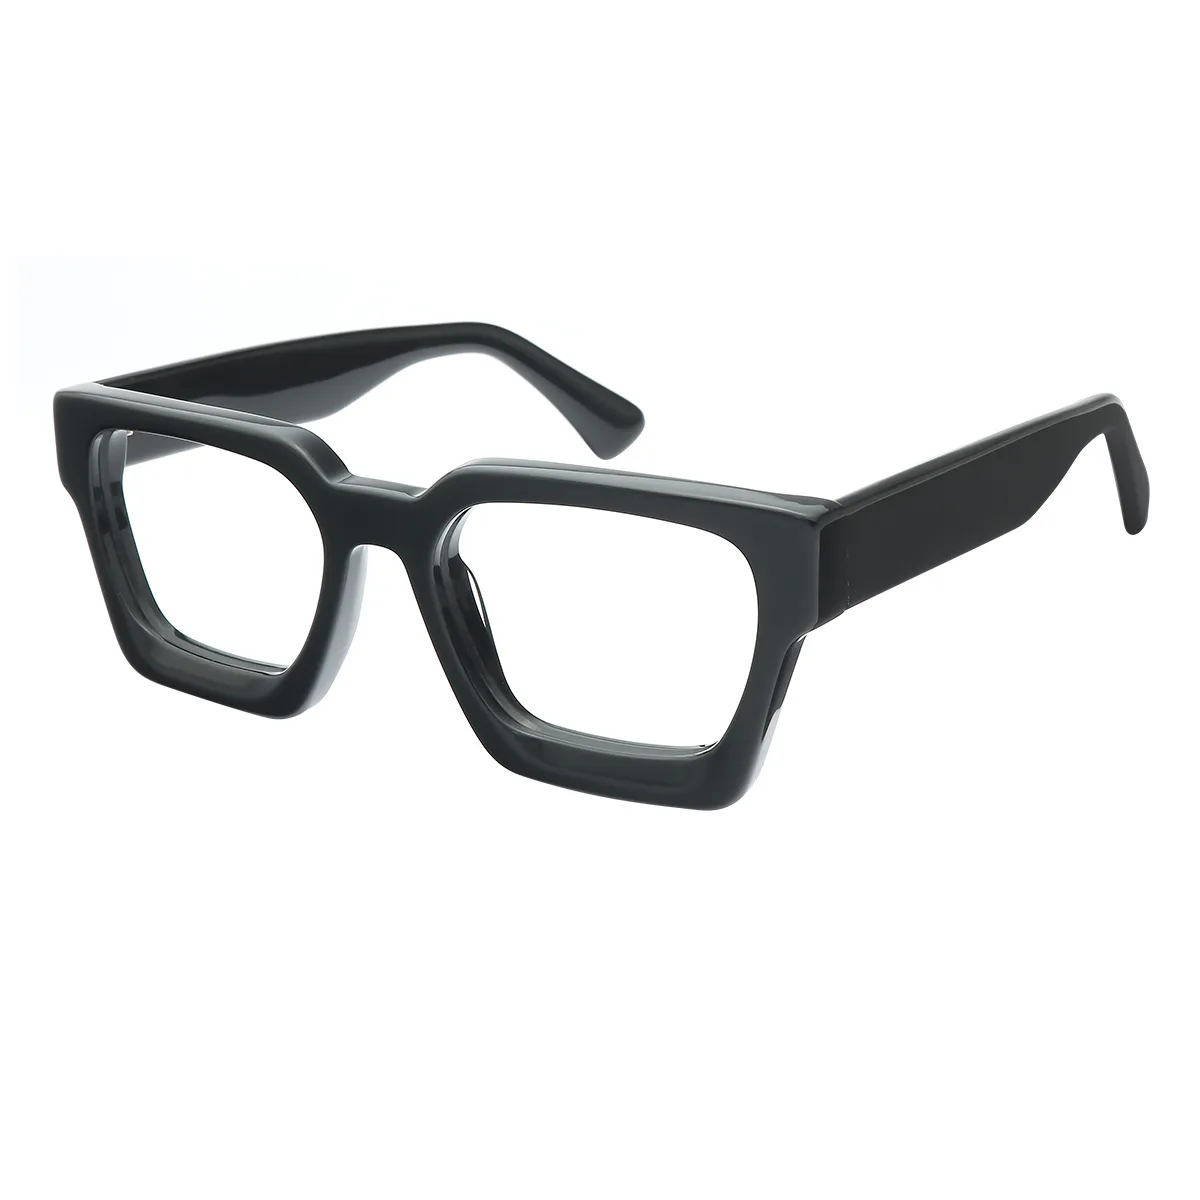 Classic Square Caramel Eyeglasses for Women & Men